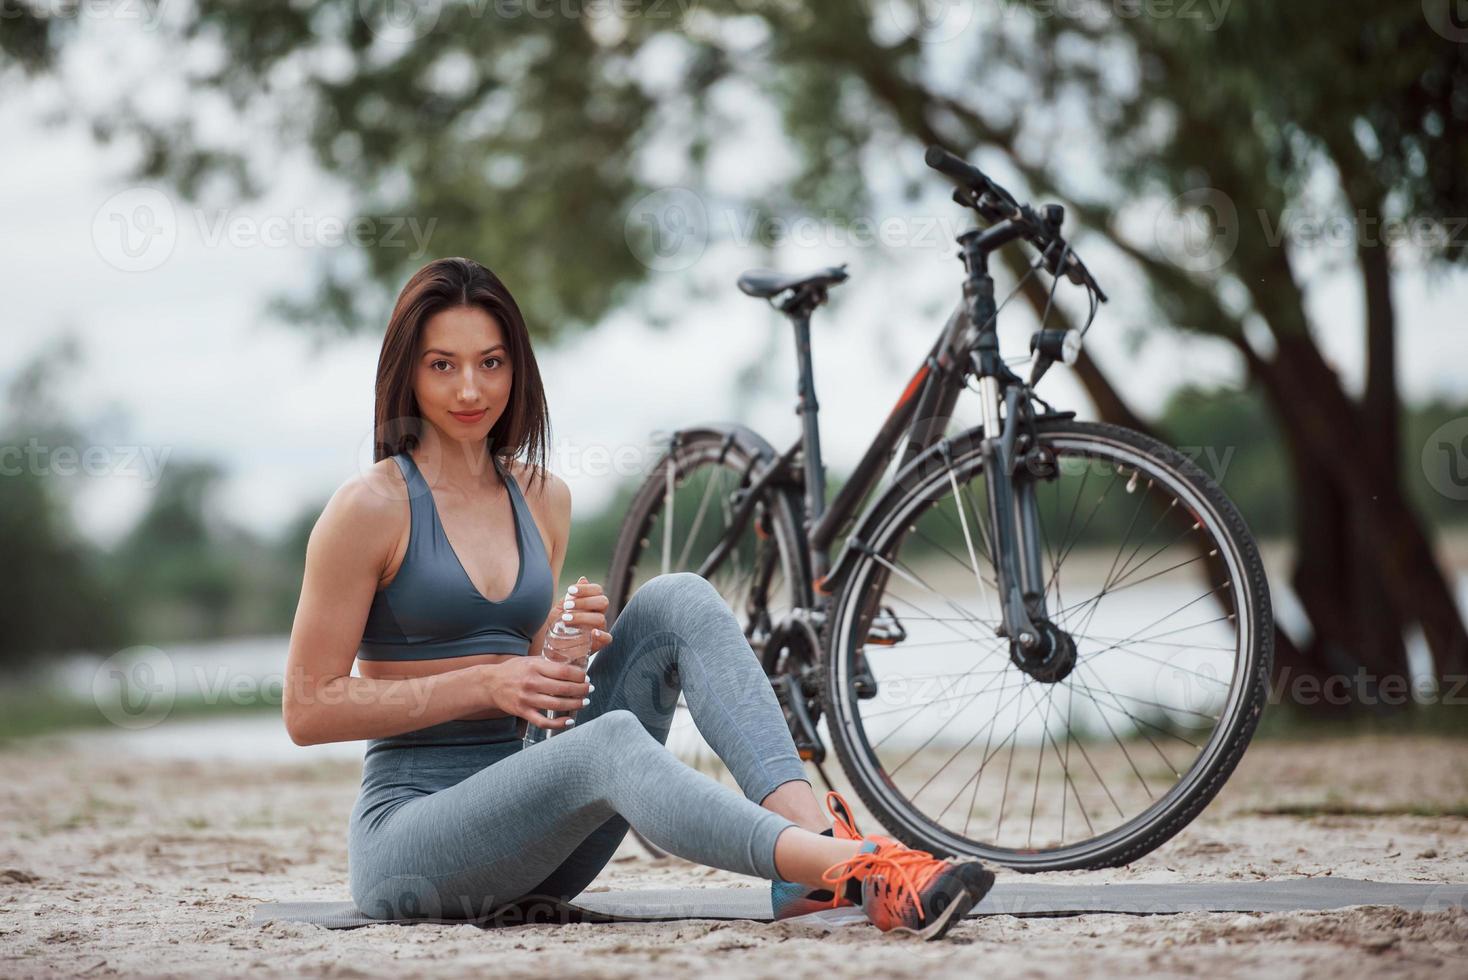 bilan hydrique humain. cycliste féminine avec une bonne forme de corps assise près de son vélo sur la plage pendant la journée photo